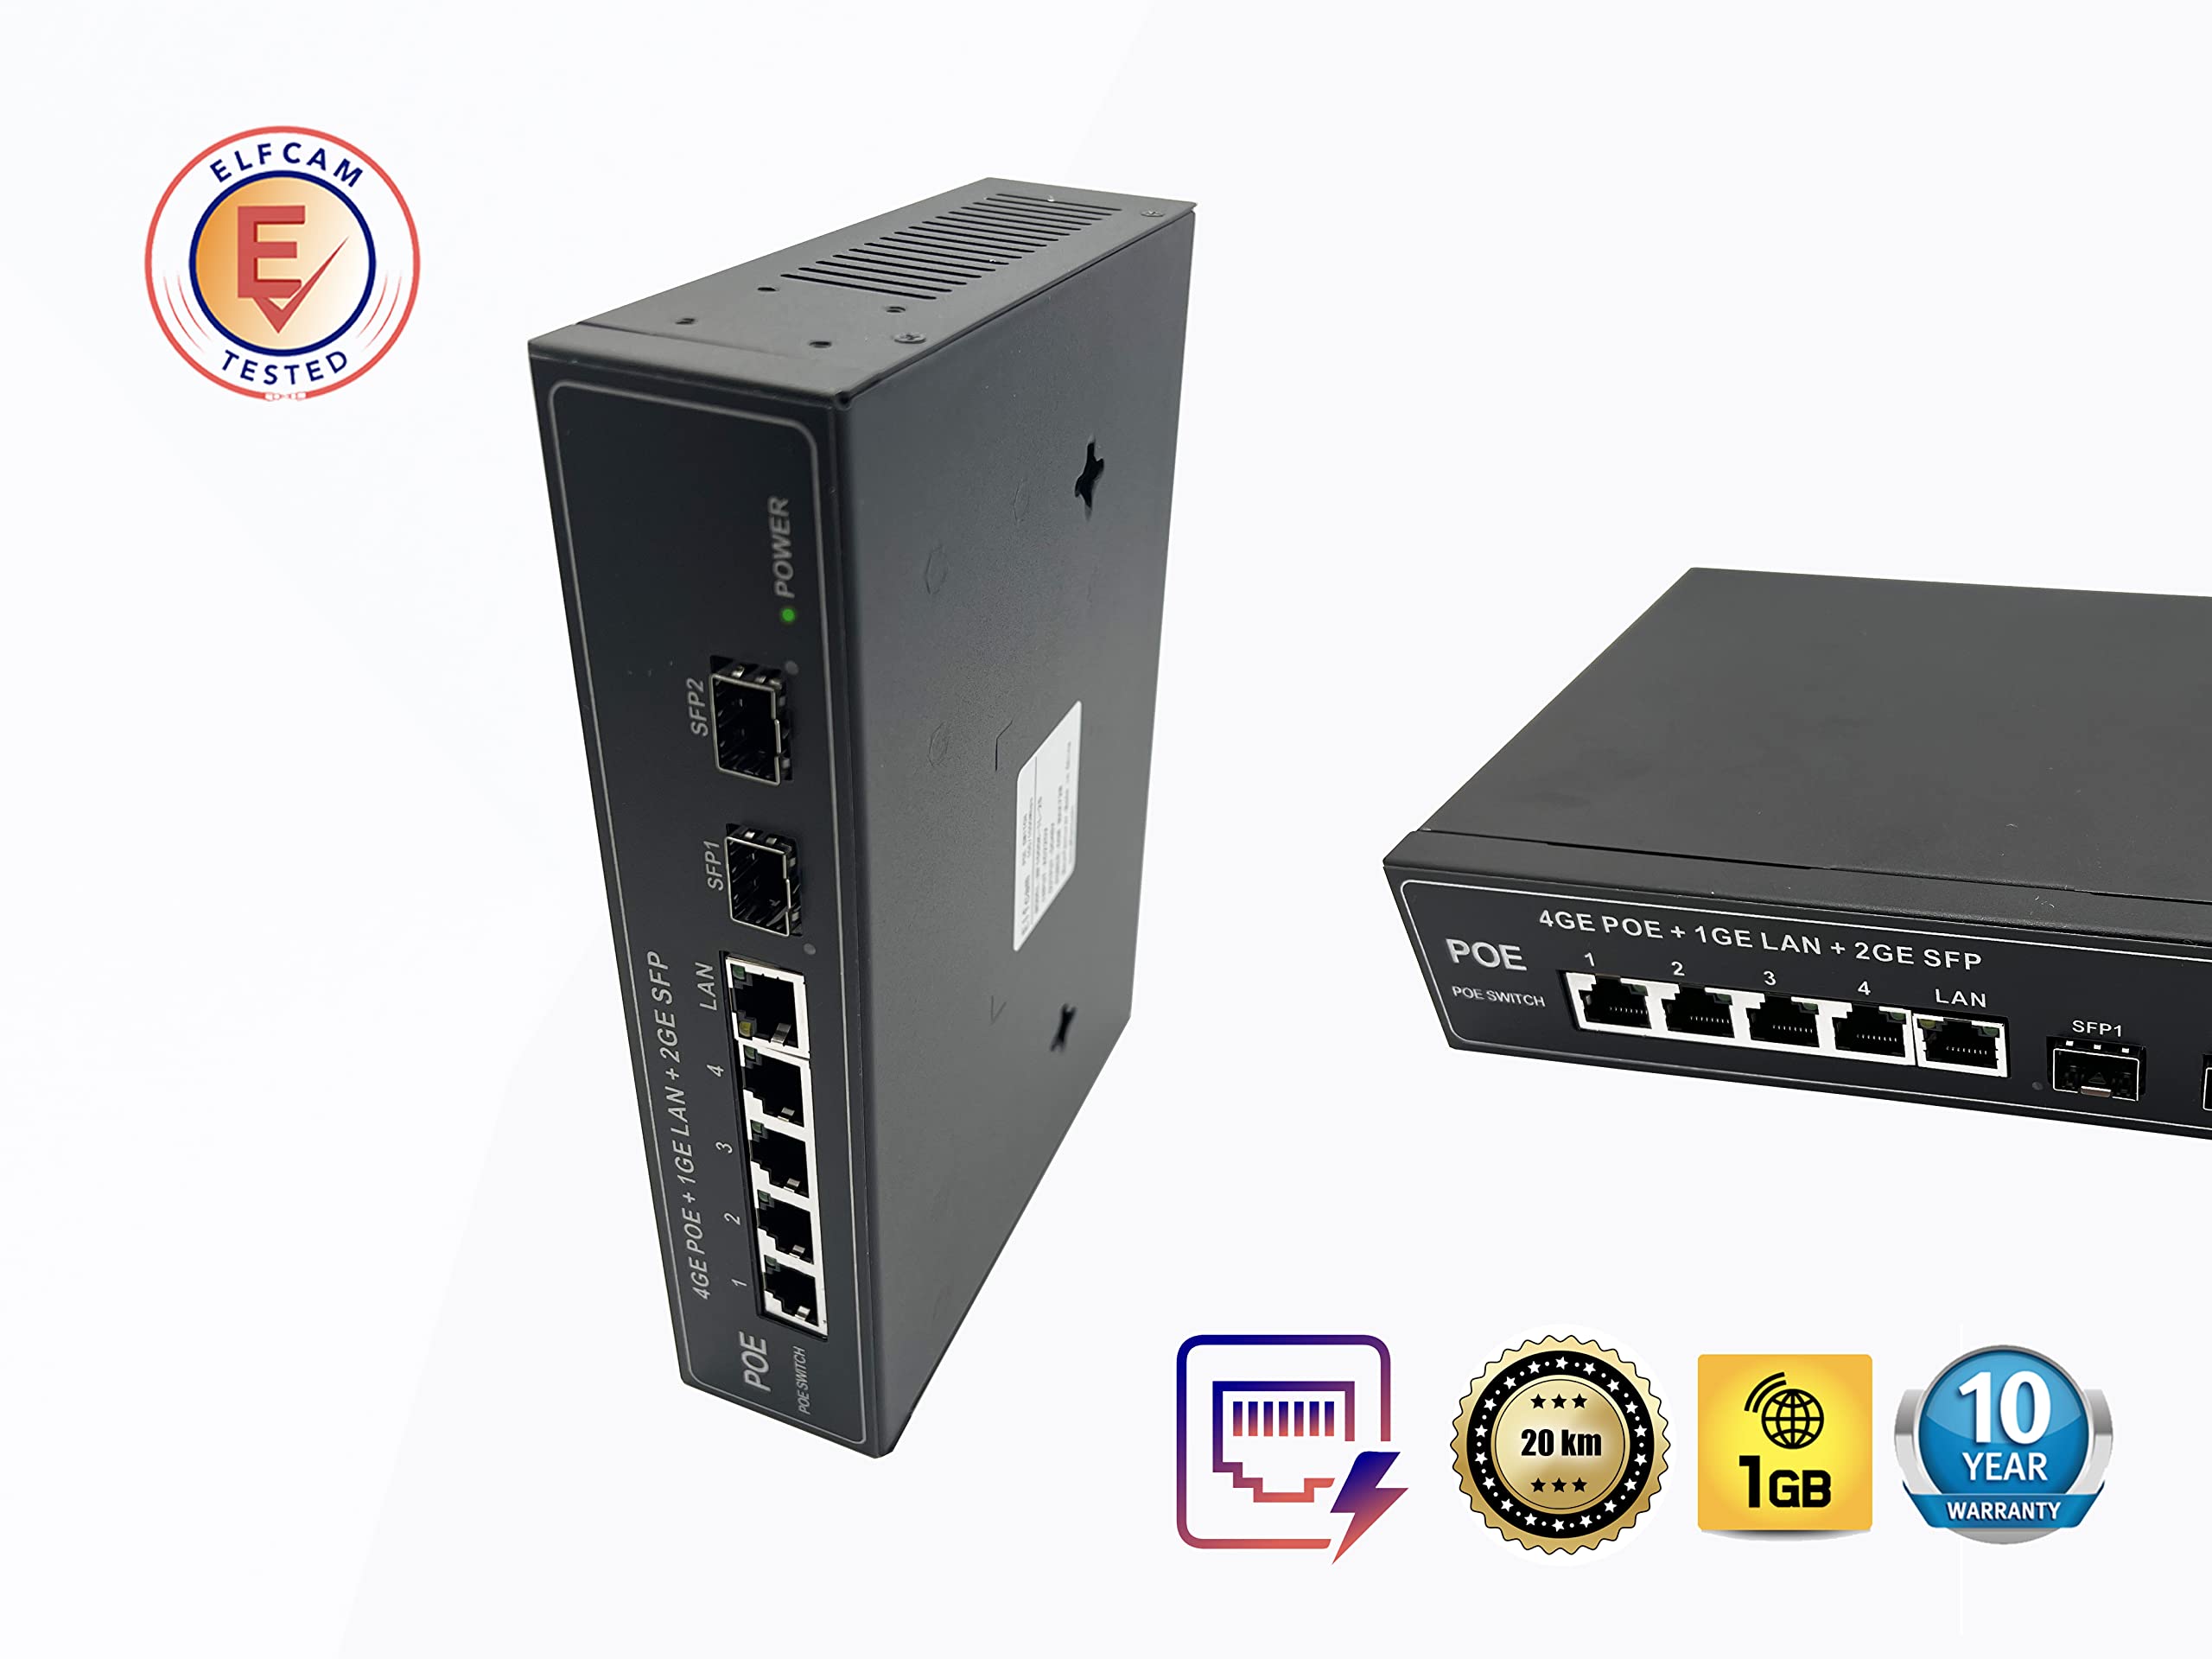 Switch PoE Fibre Optique - 2 Ports SFP & 4 Ports Ethernet Gigabit